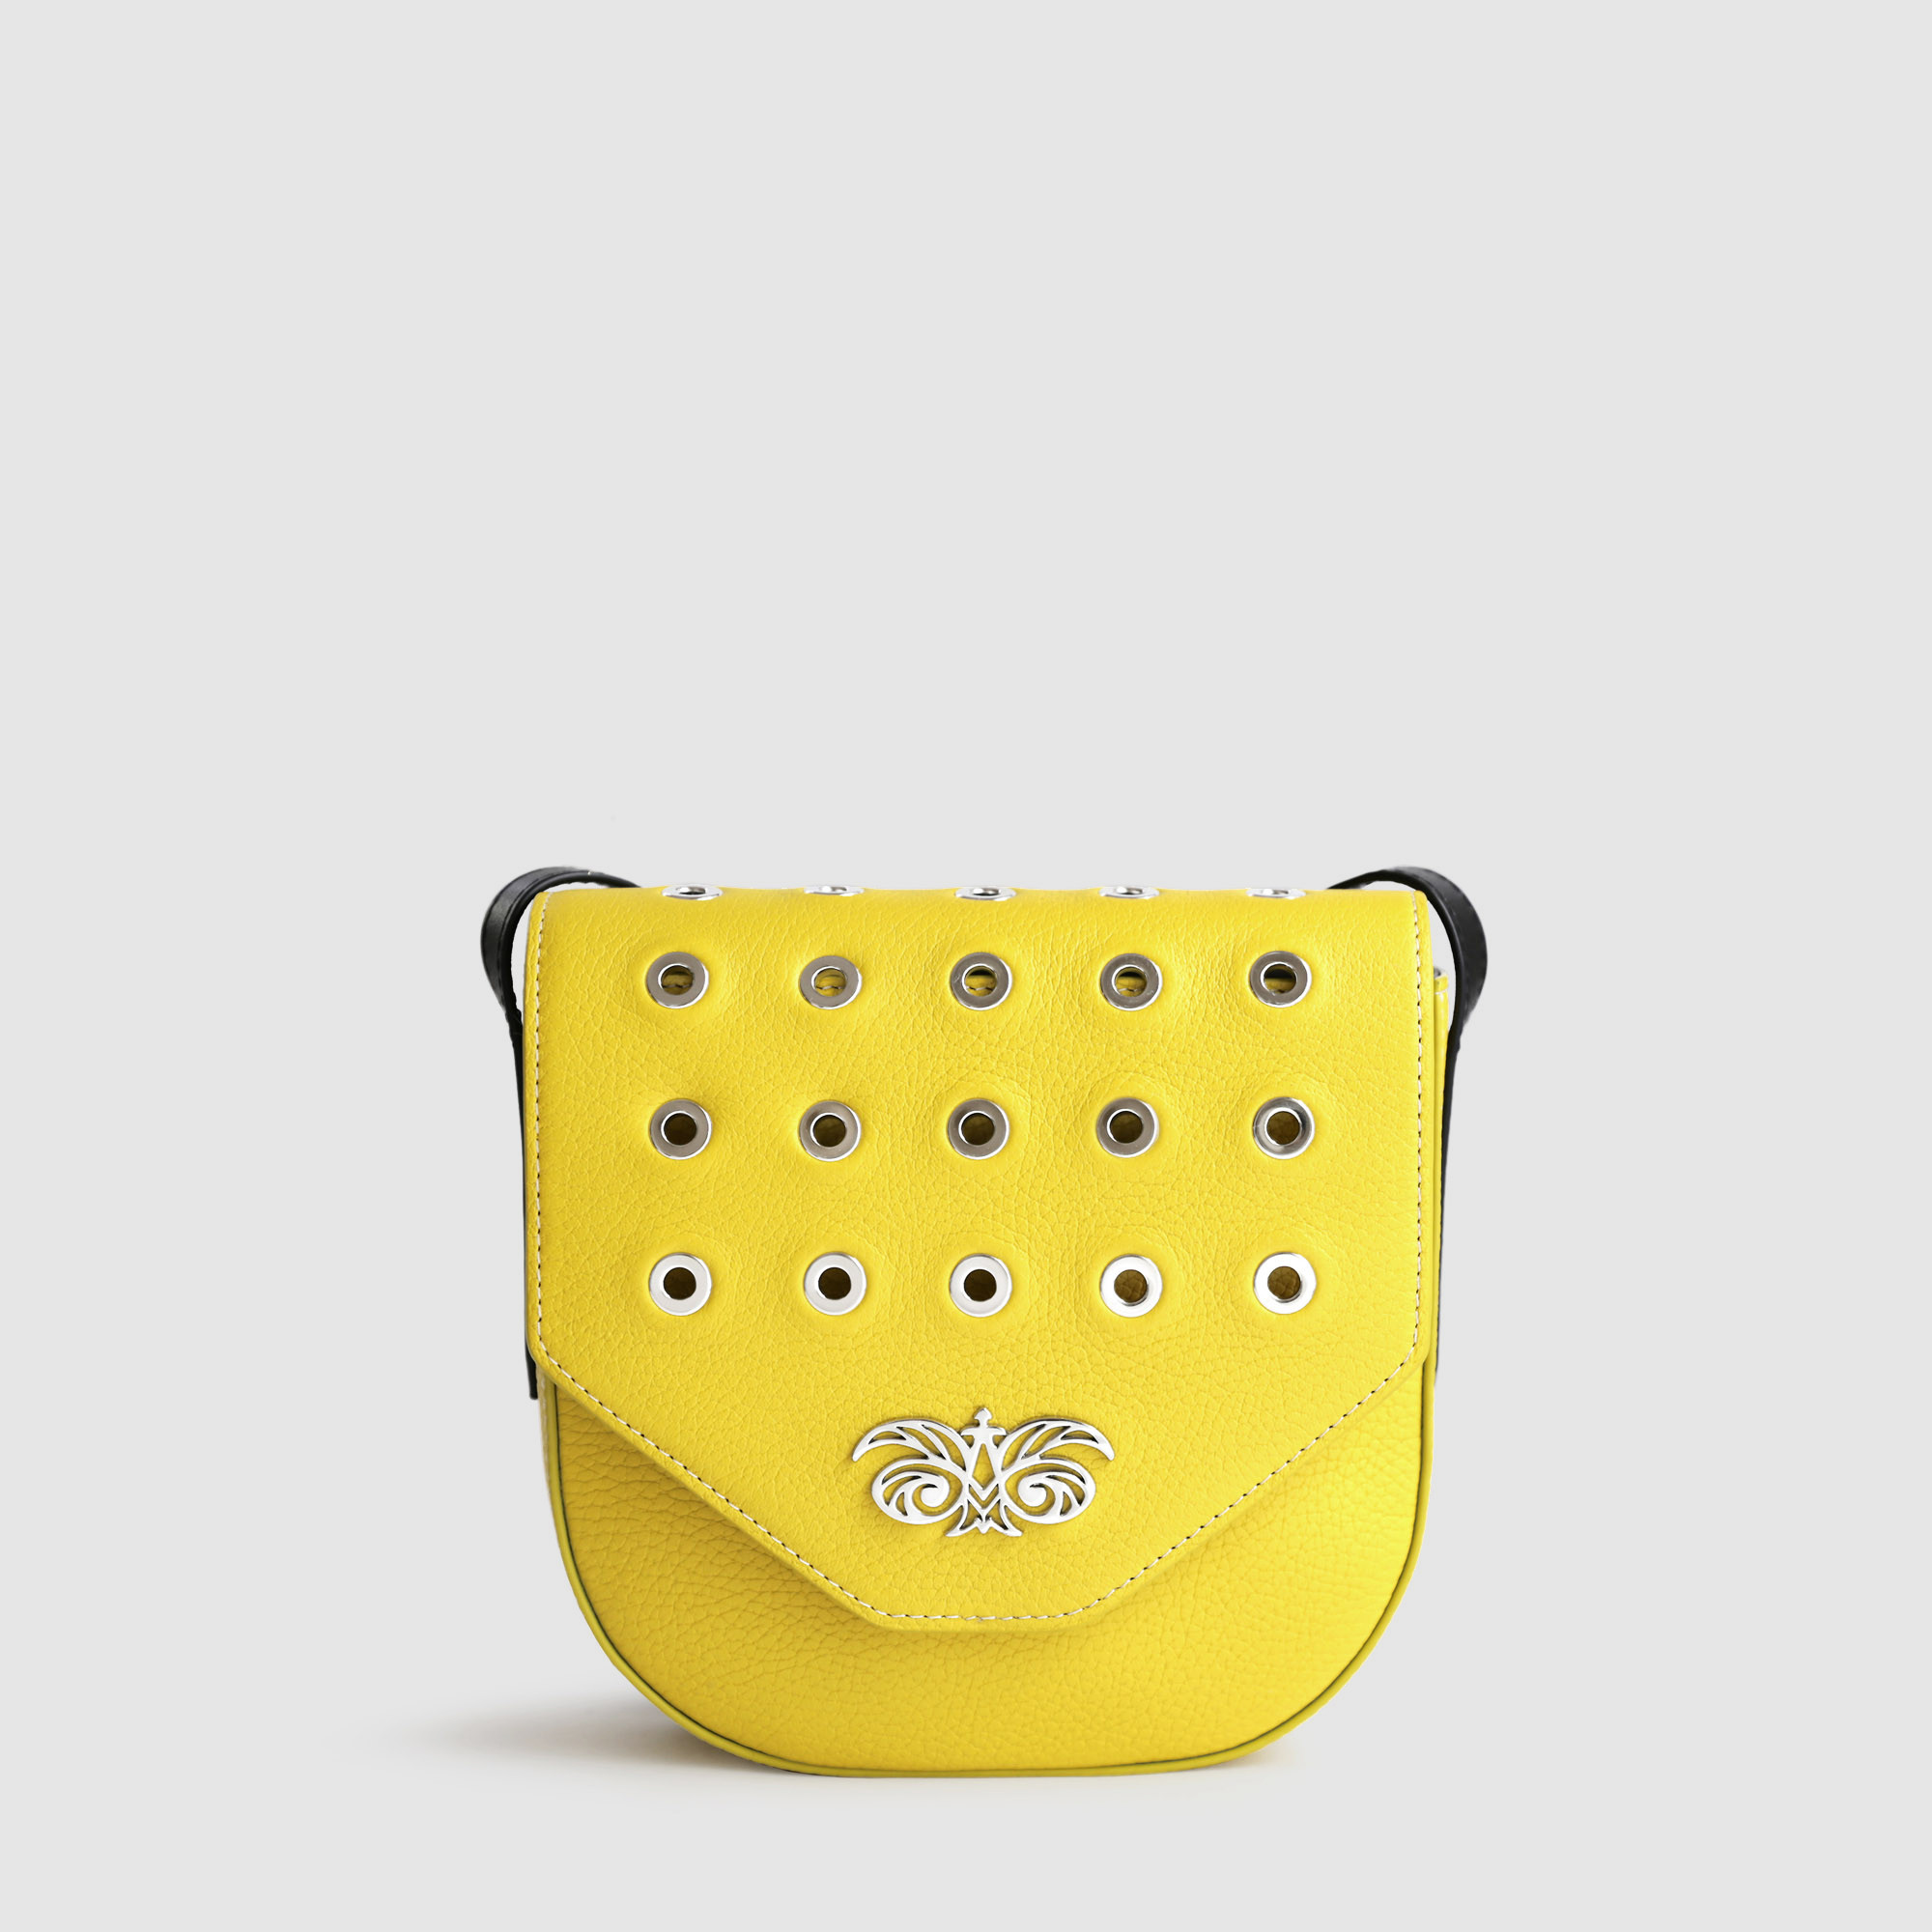 petit sac à rabat style Rock en cuir foulonné, coloris rose jaune citron, fond gris